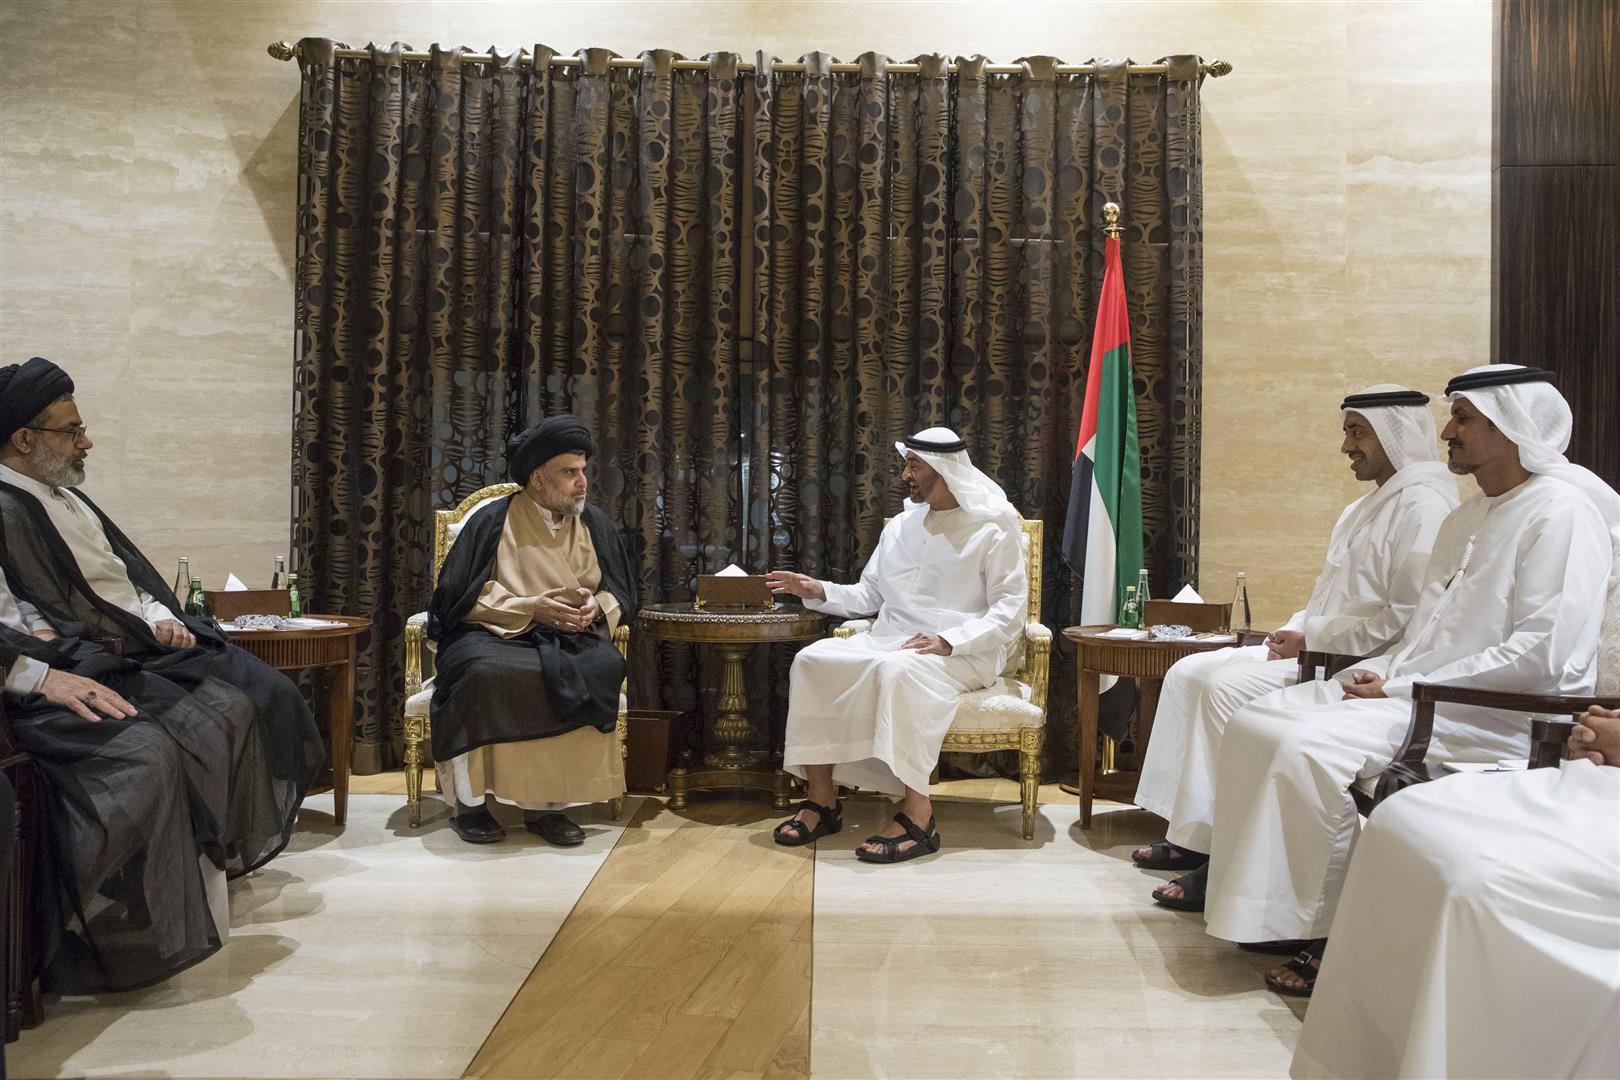 قرقاش: محمد بن سلمان يقود "التحرك الواعد" تجاه العراق بمشاركة الإمارات والبحرين